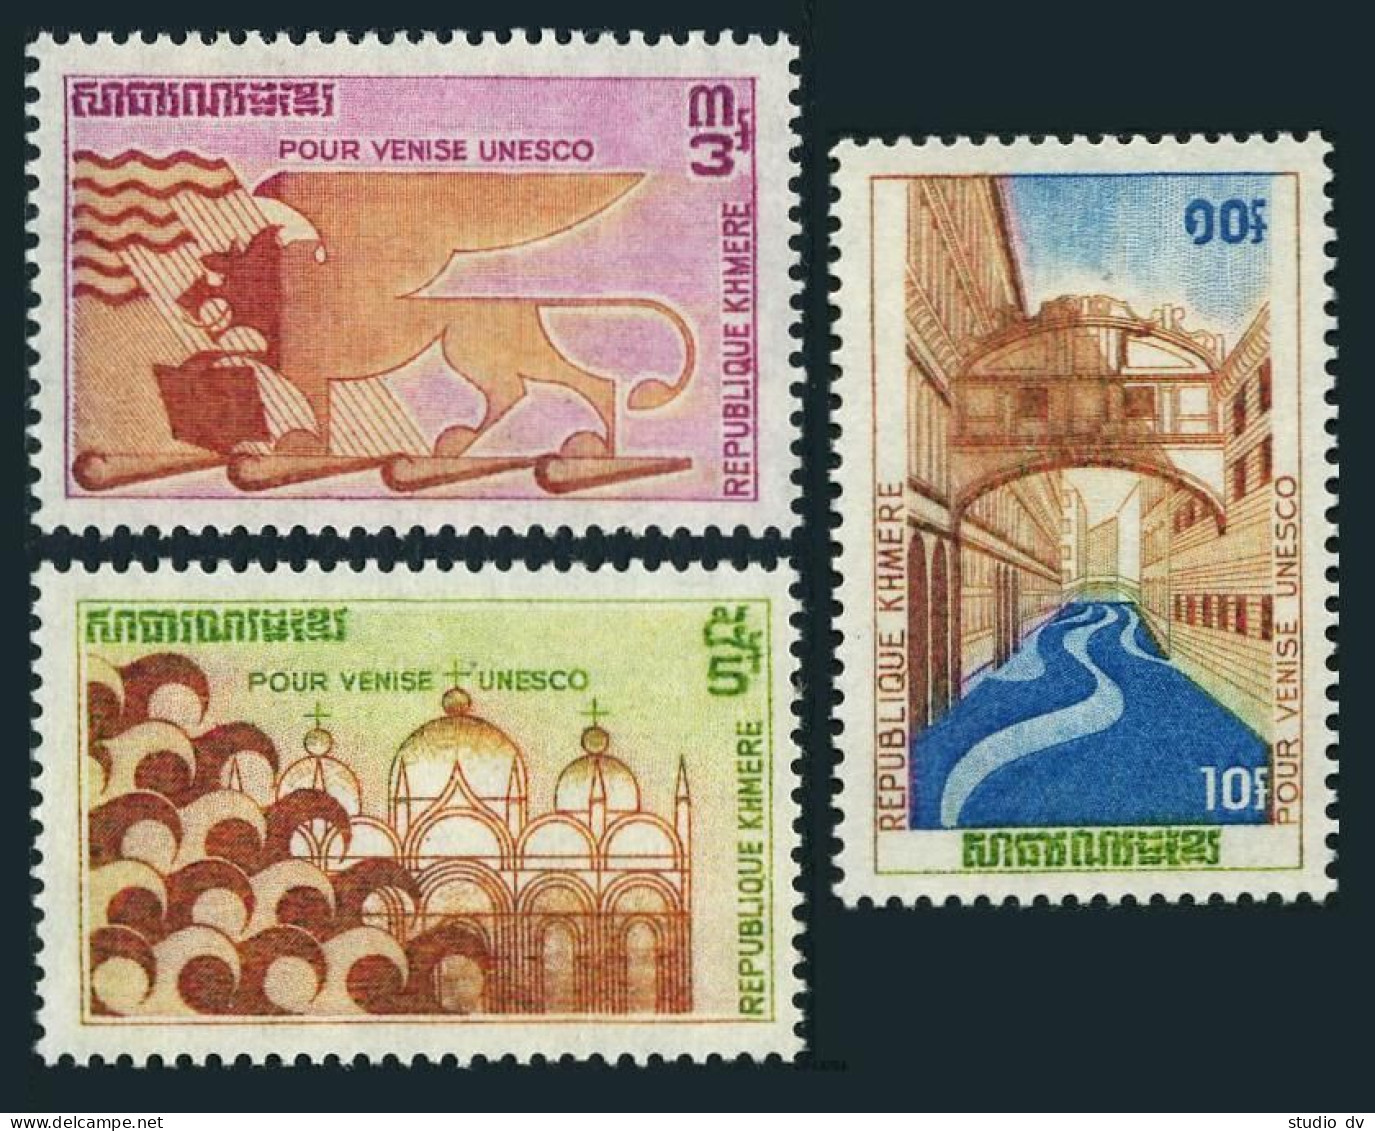 Cambodia 275-277, MNH. Michel 318-320. UNESCO Campaign To Save Venice, 1972. - Cambodge